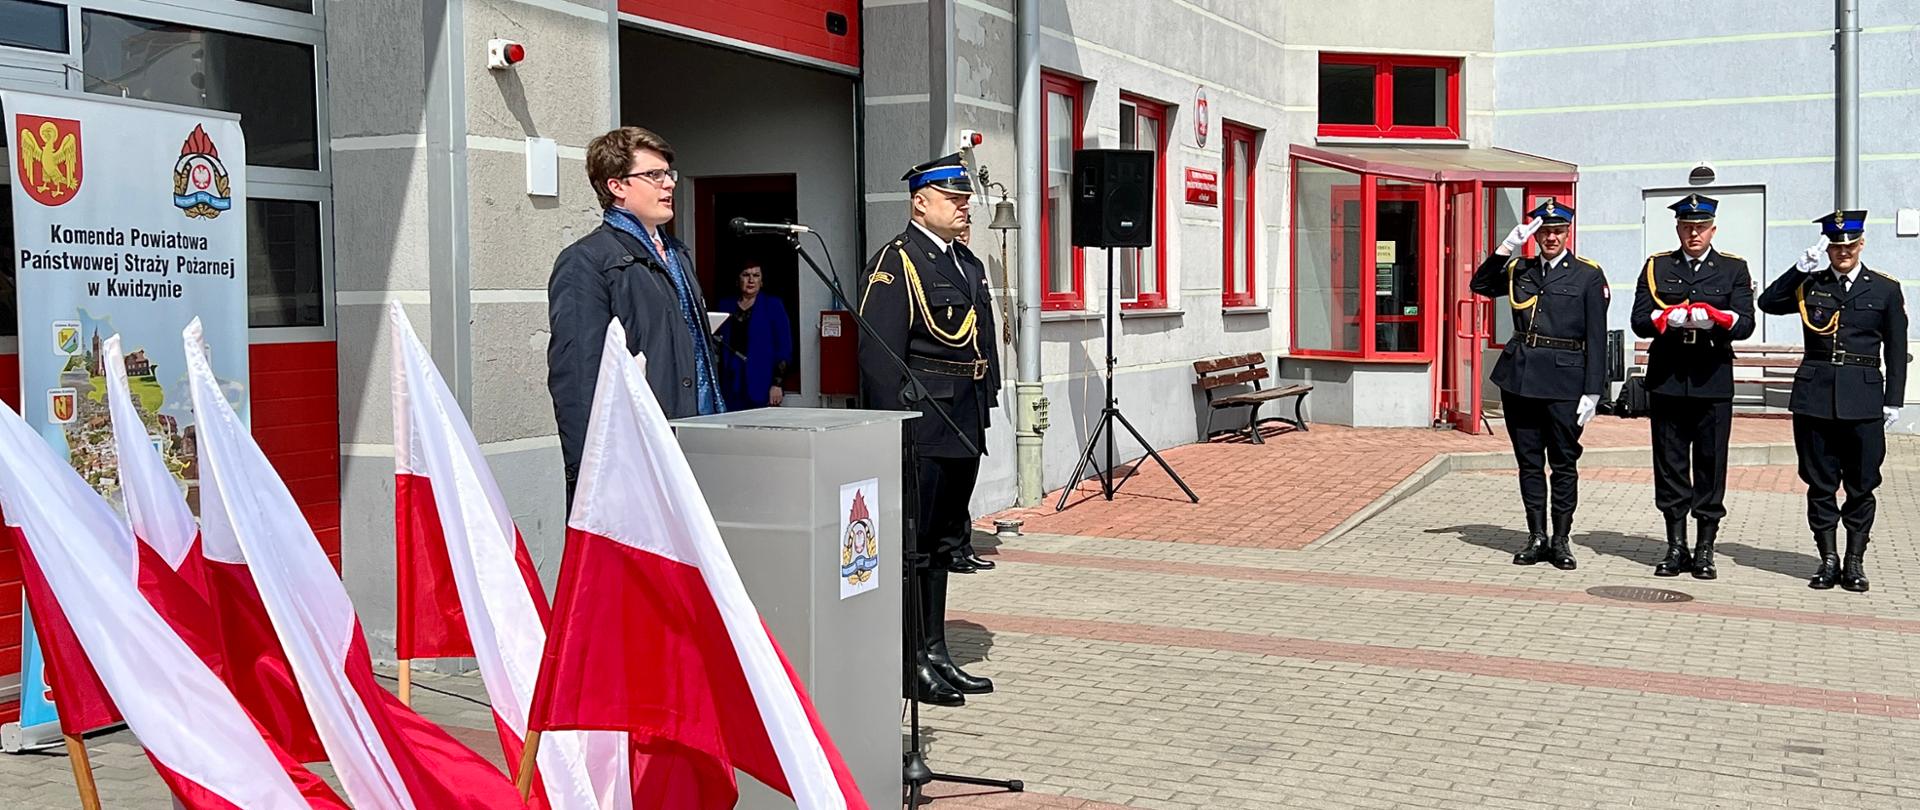 Wicewojewoda Pomorski podczas obchodów Dnia Strażaka w Komendzie Powiatowej Państwowej Straży Pożarnej w Kwidzynie.